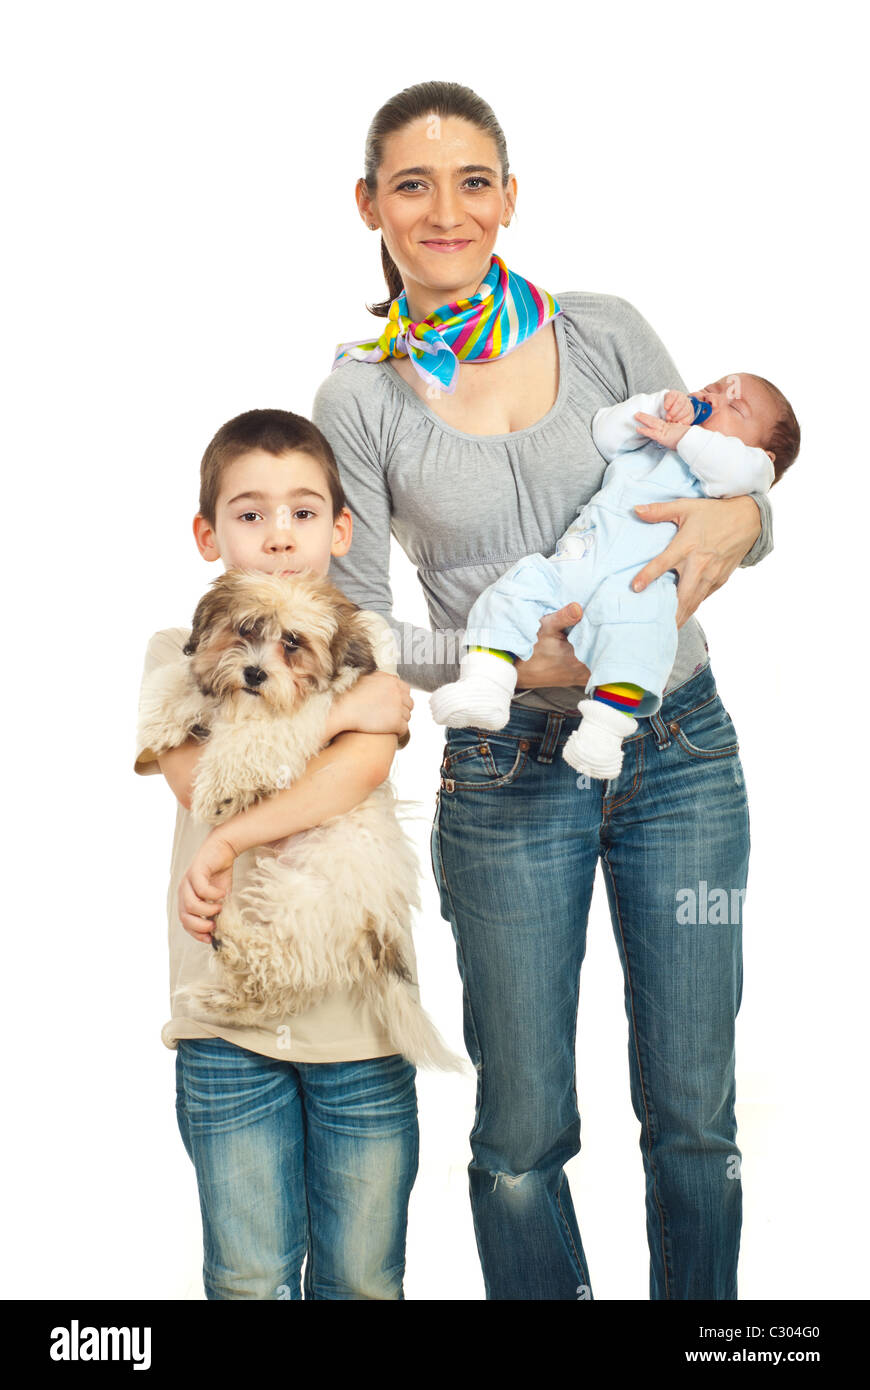 Felice madre con due ragazzi bambini neonati e scolaro e un cucciolo di cane in posa insieme isolato su sfondo bianco Foto Stock